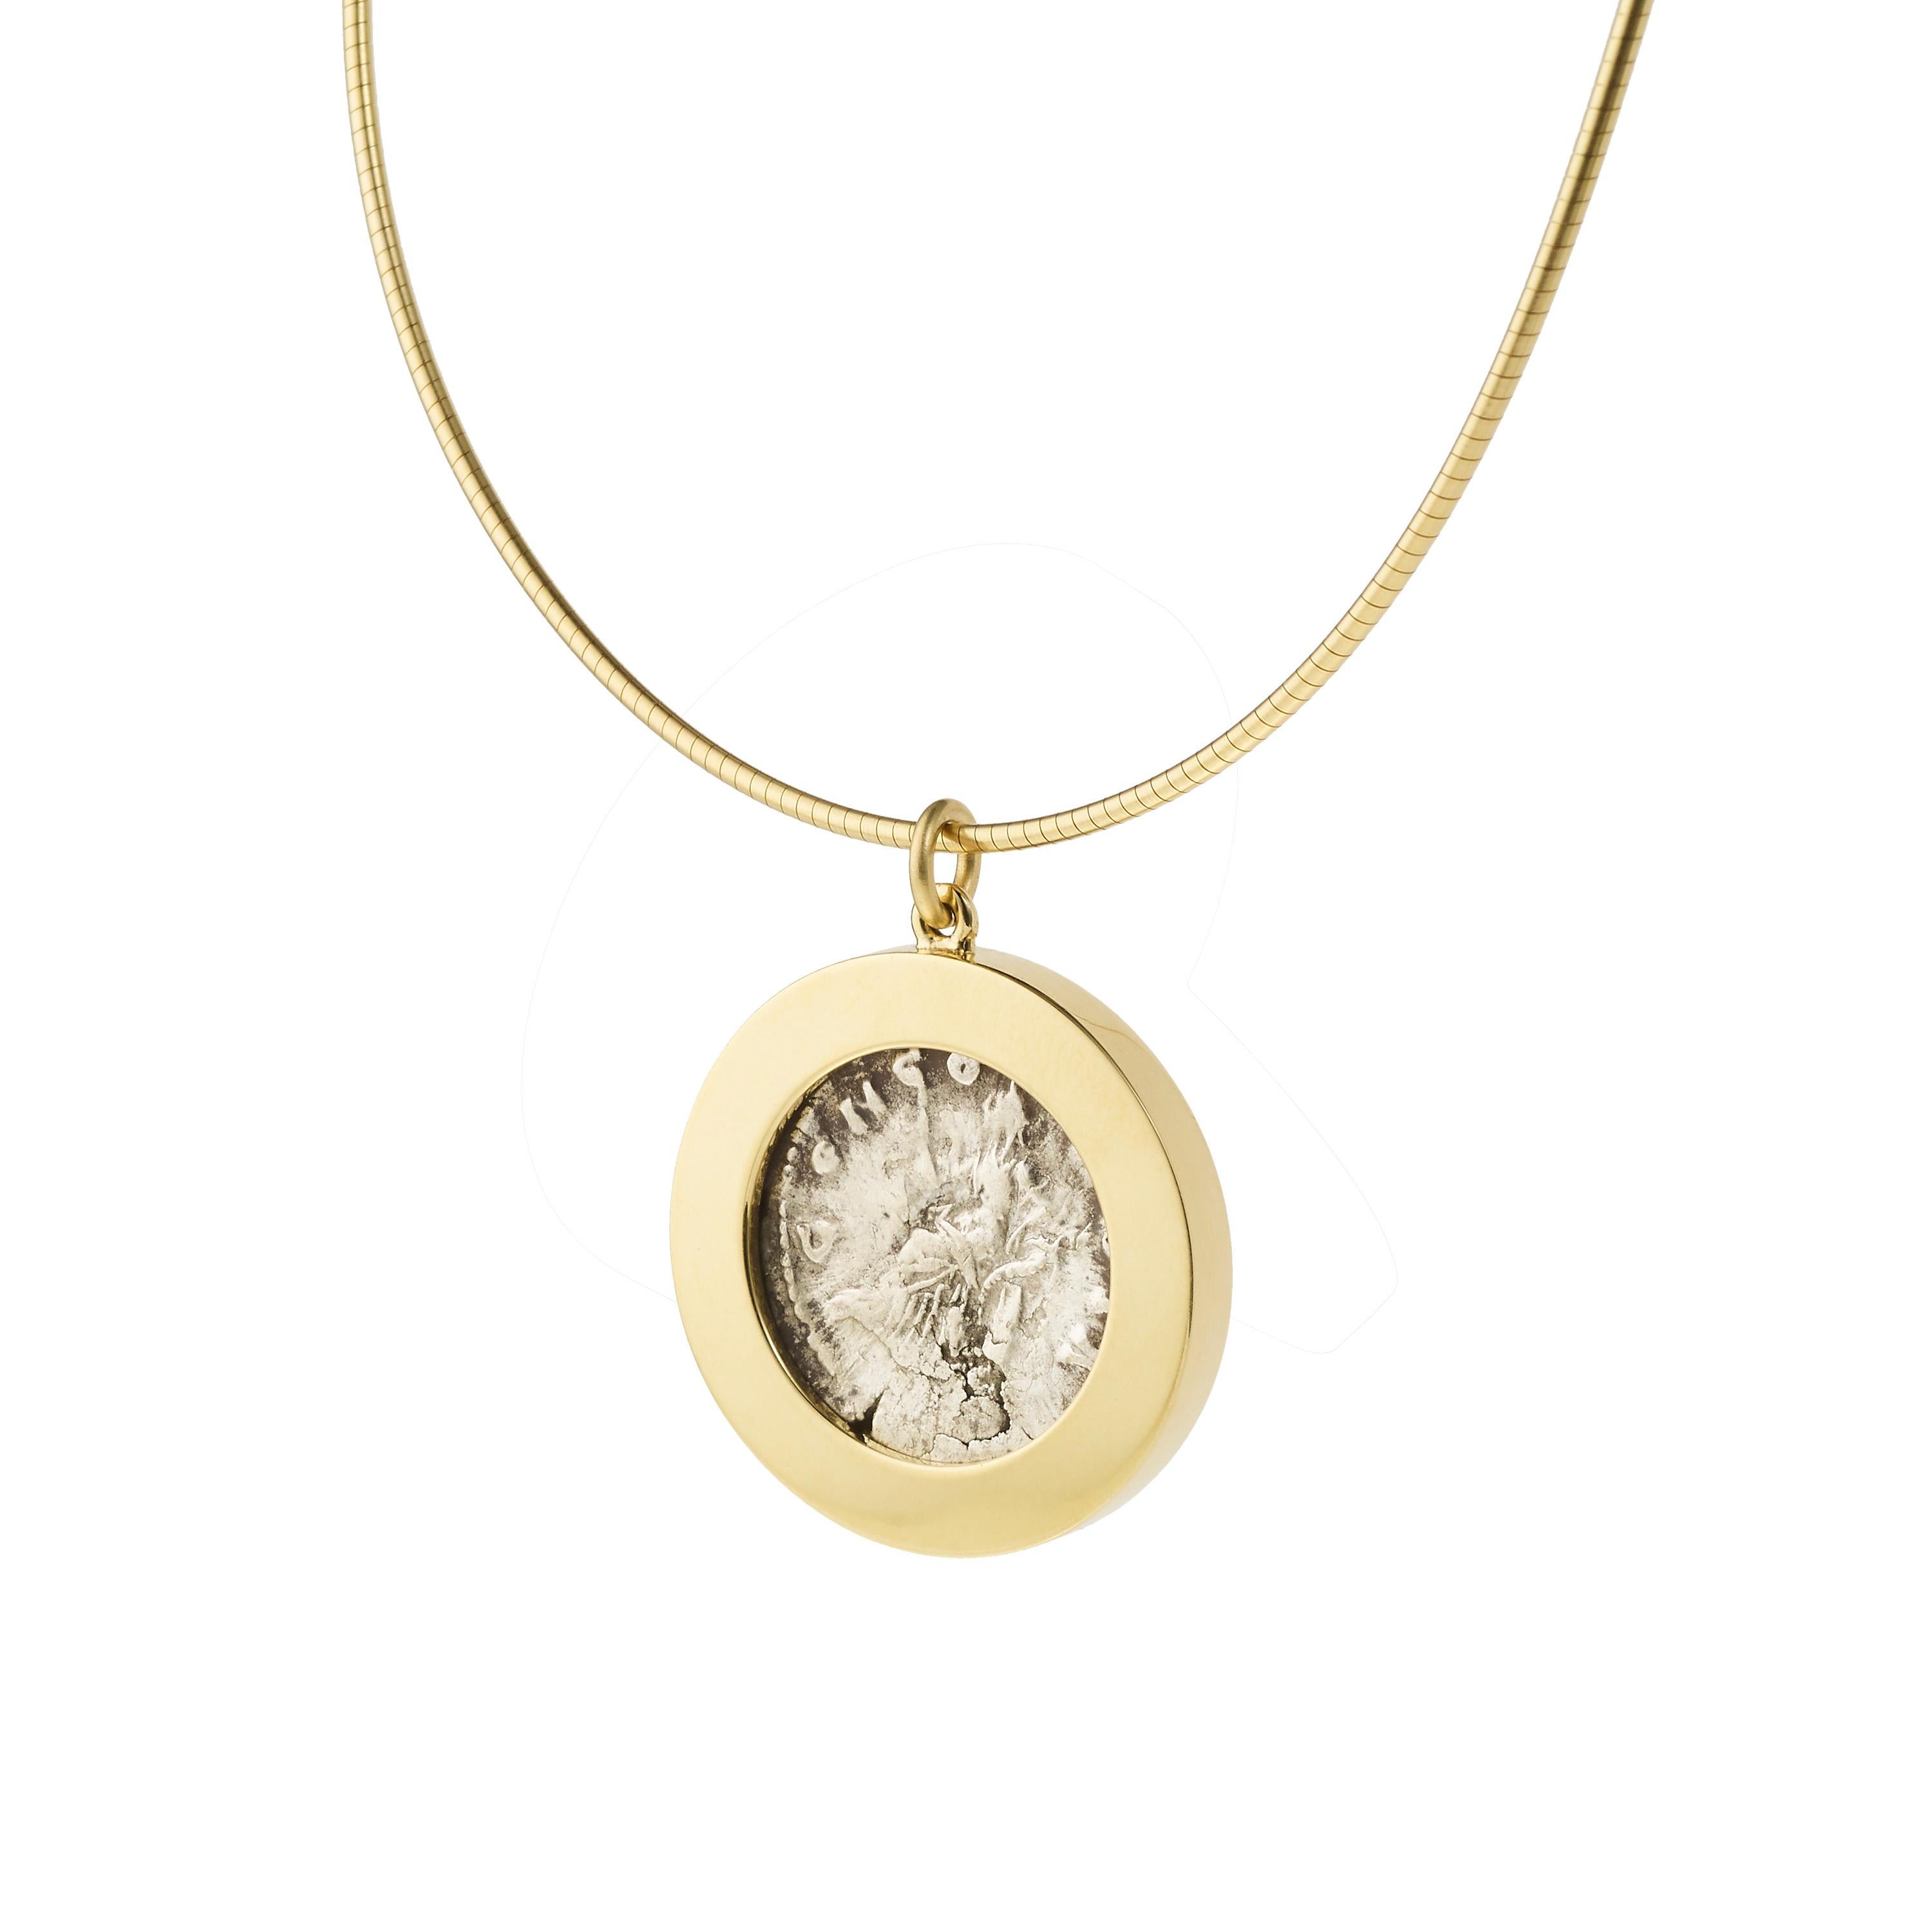 Victoria Strigini (née en 1991)

Collier pendentif contemporain en or jaune 18 carats orné d'une pièce romaine en argent datant de 161-180 ADS, représentant l'impératrice Faustine, épouse de Marc Aurèle. Le recto de la pièce représente un buste